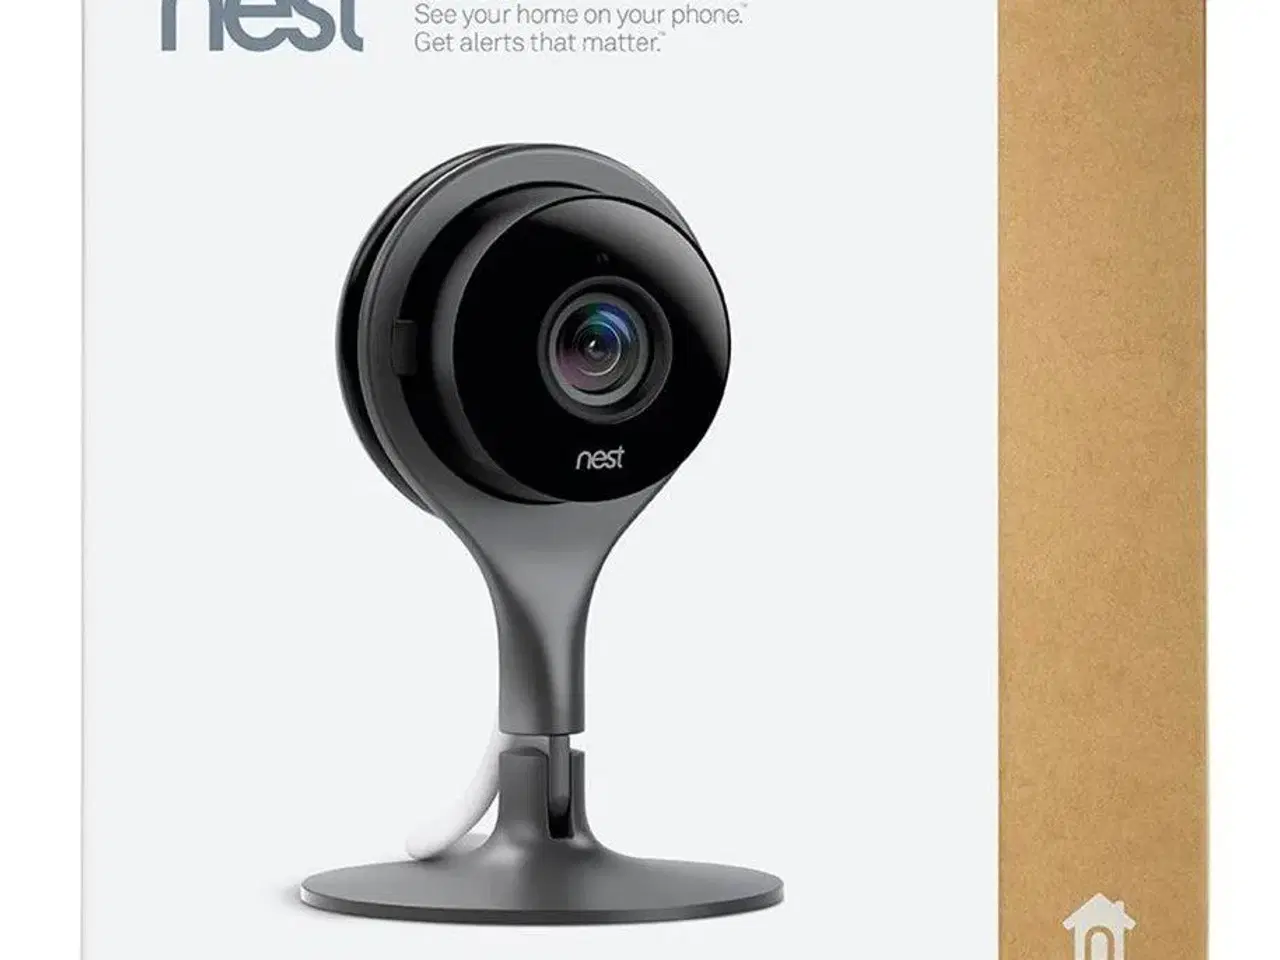 Billede 1 - Google Nest Kamera købes 